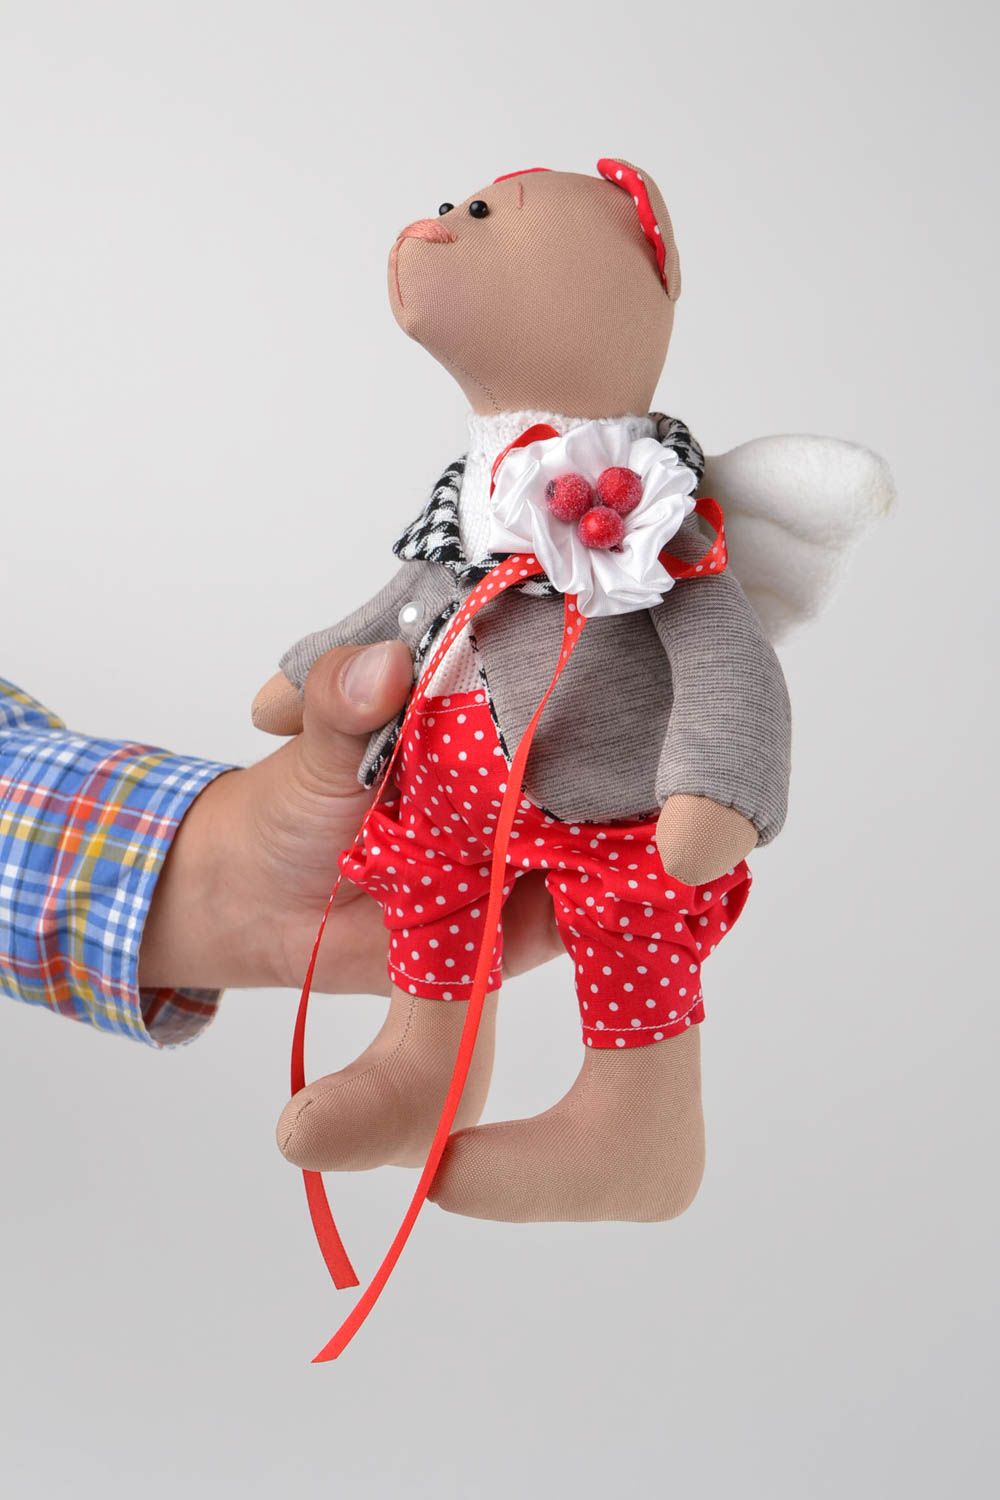 Bär handgemachtes Kleinkinder Spielzeug Stoff Tier Haus Deko Geschenk für Kinder foto 2